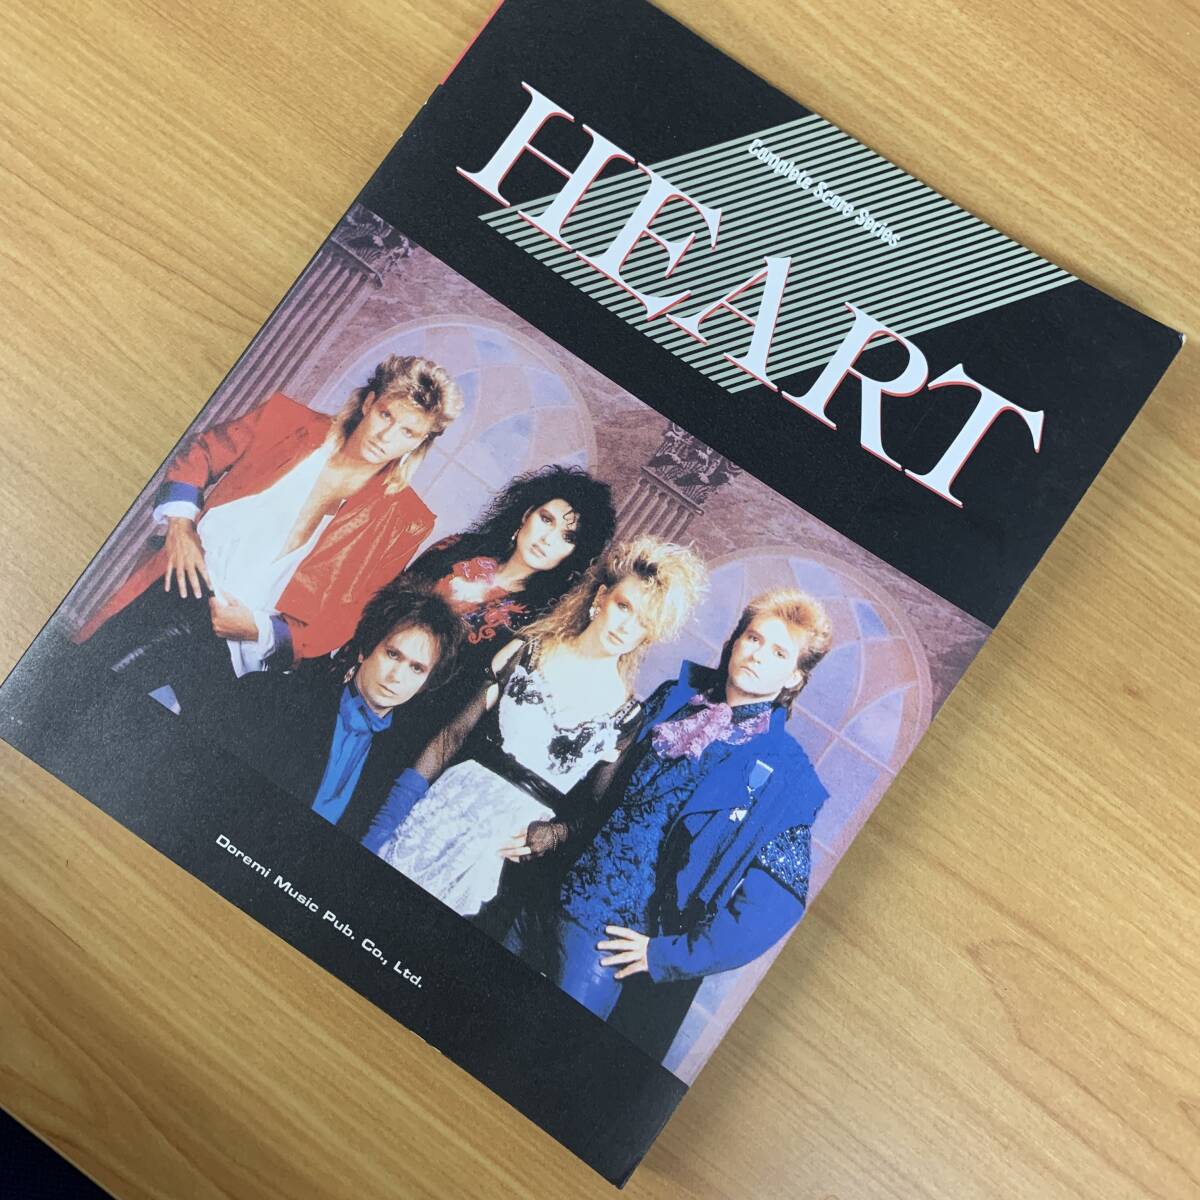 [ Band Score ] Heart |HEART музыкальное сопровождение стоимость доставки 185 иен 